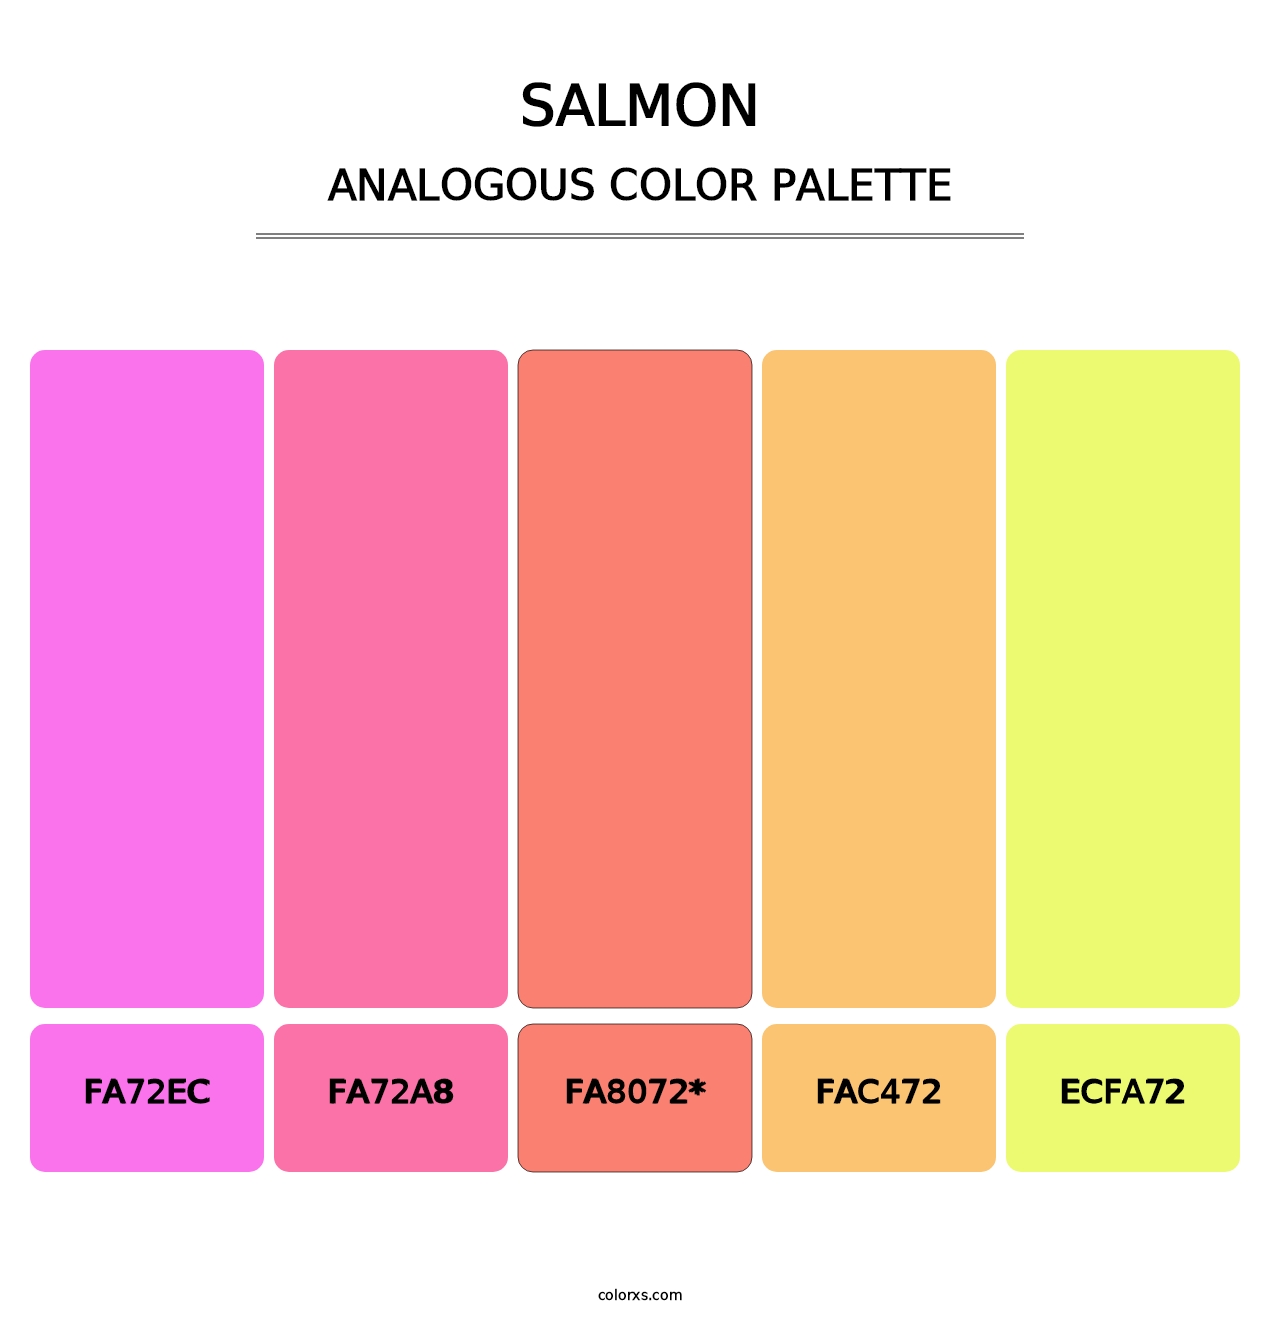 Salmon - Analogous Color Palette